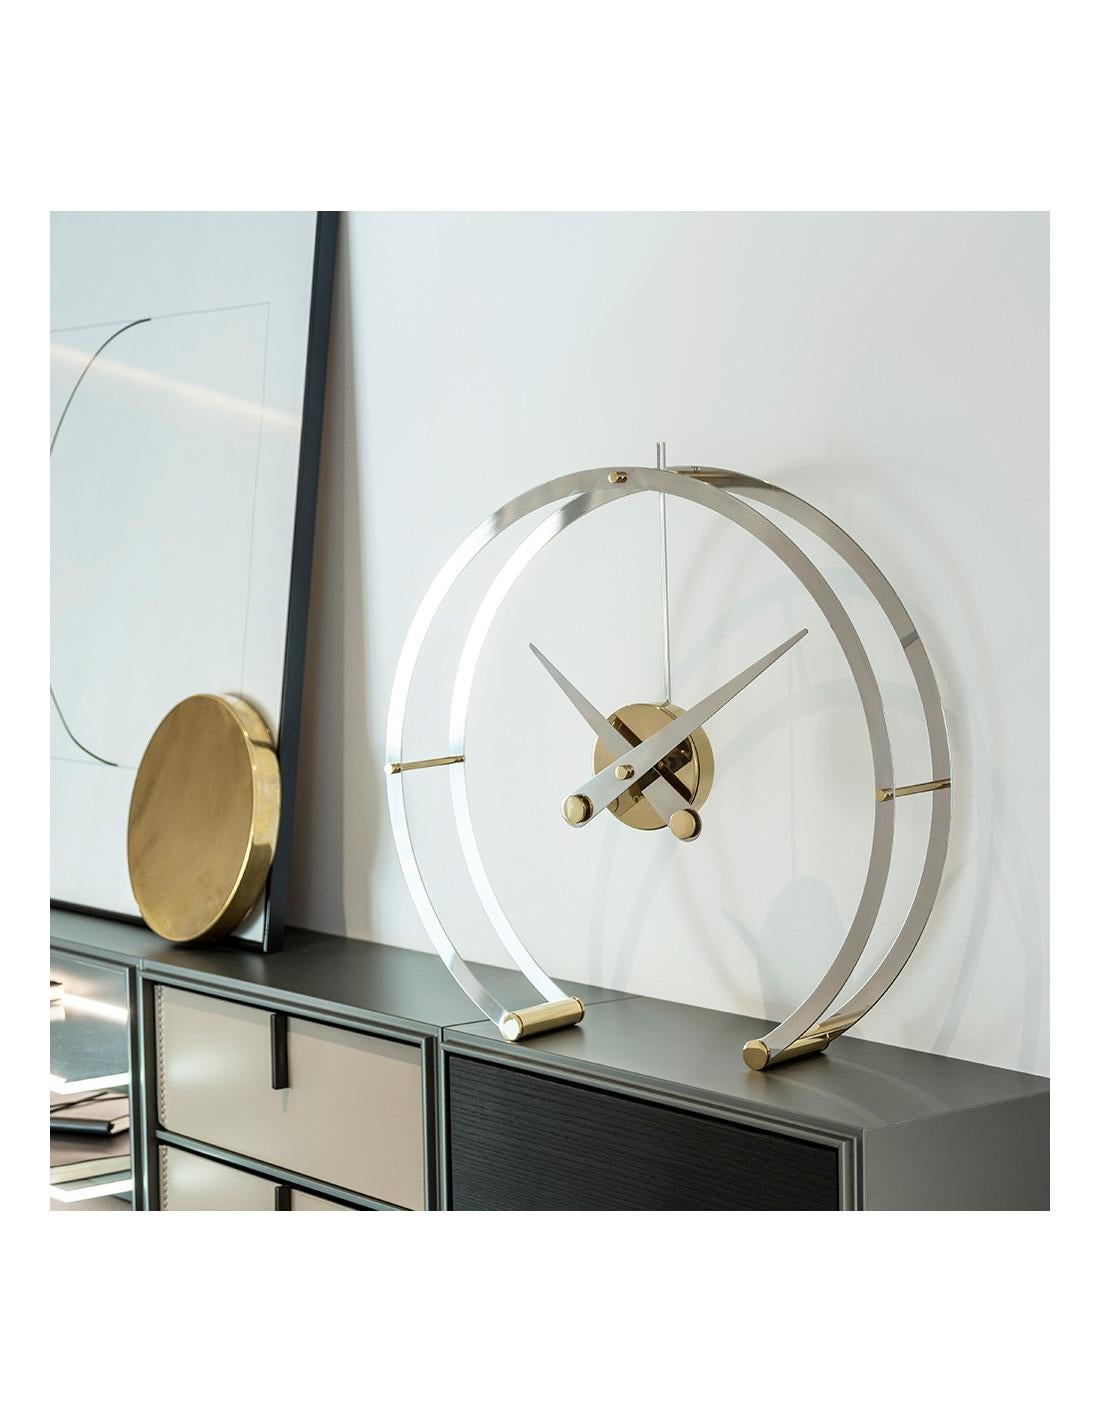 Die Omega G Clock beeindruckt durch eine in der Luft schwebende Uhr, die ihre Tiefe verliert, indem sie unnötige Elemente entfernt und sie einfach und glamourös macht.
Omega G Tischuhr : Ringe und Zeiger aus Edelstahl mit goldenen Details, Gehäuse